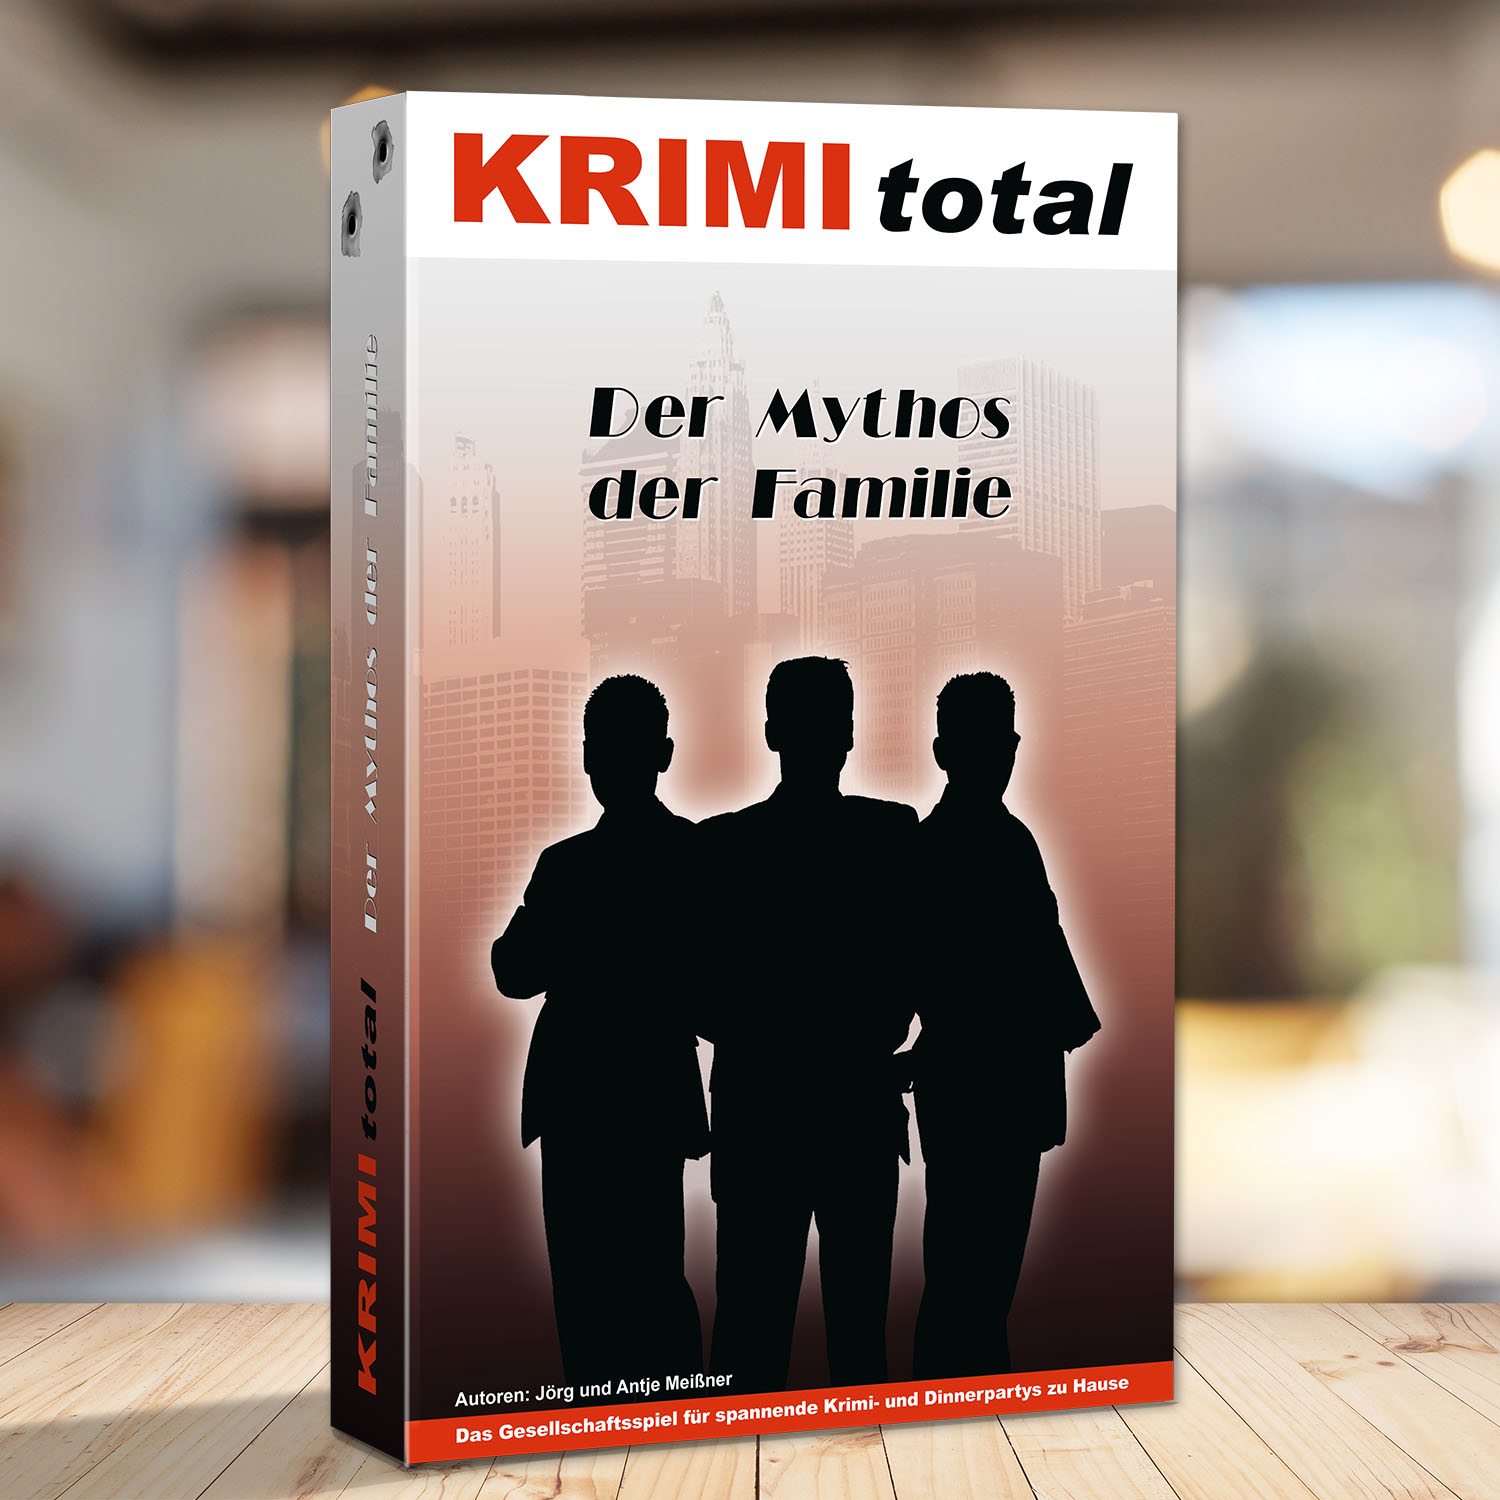 Abbildung eines Spielkartons des Krimispiels "KRIMI total - Der Mythos der Familie"